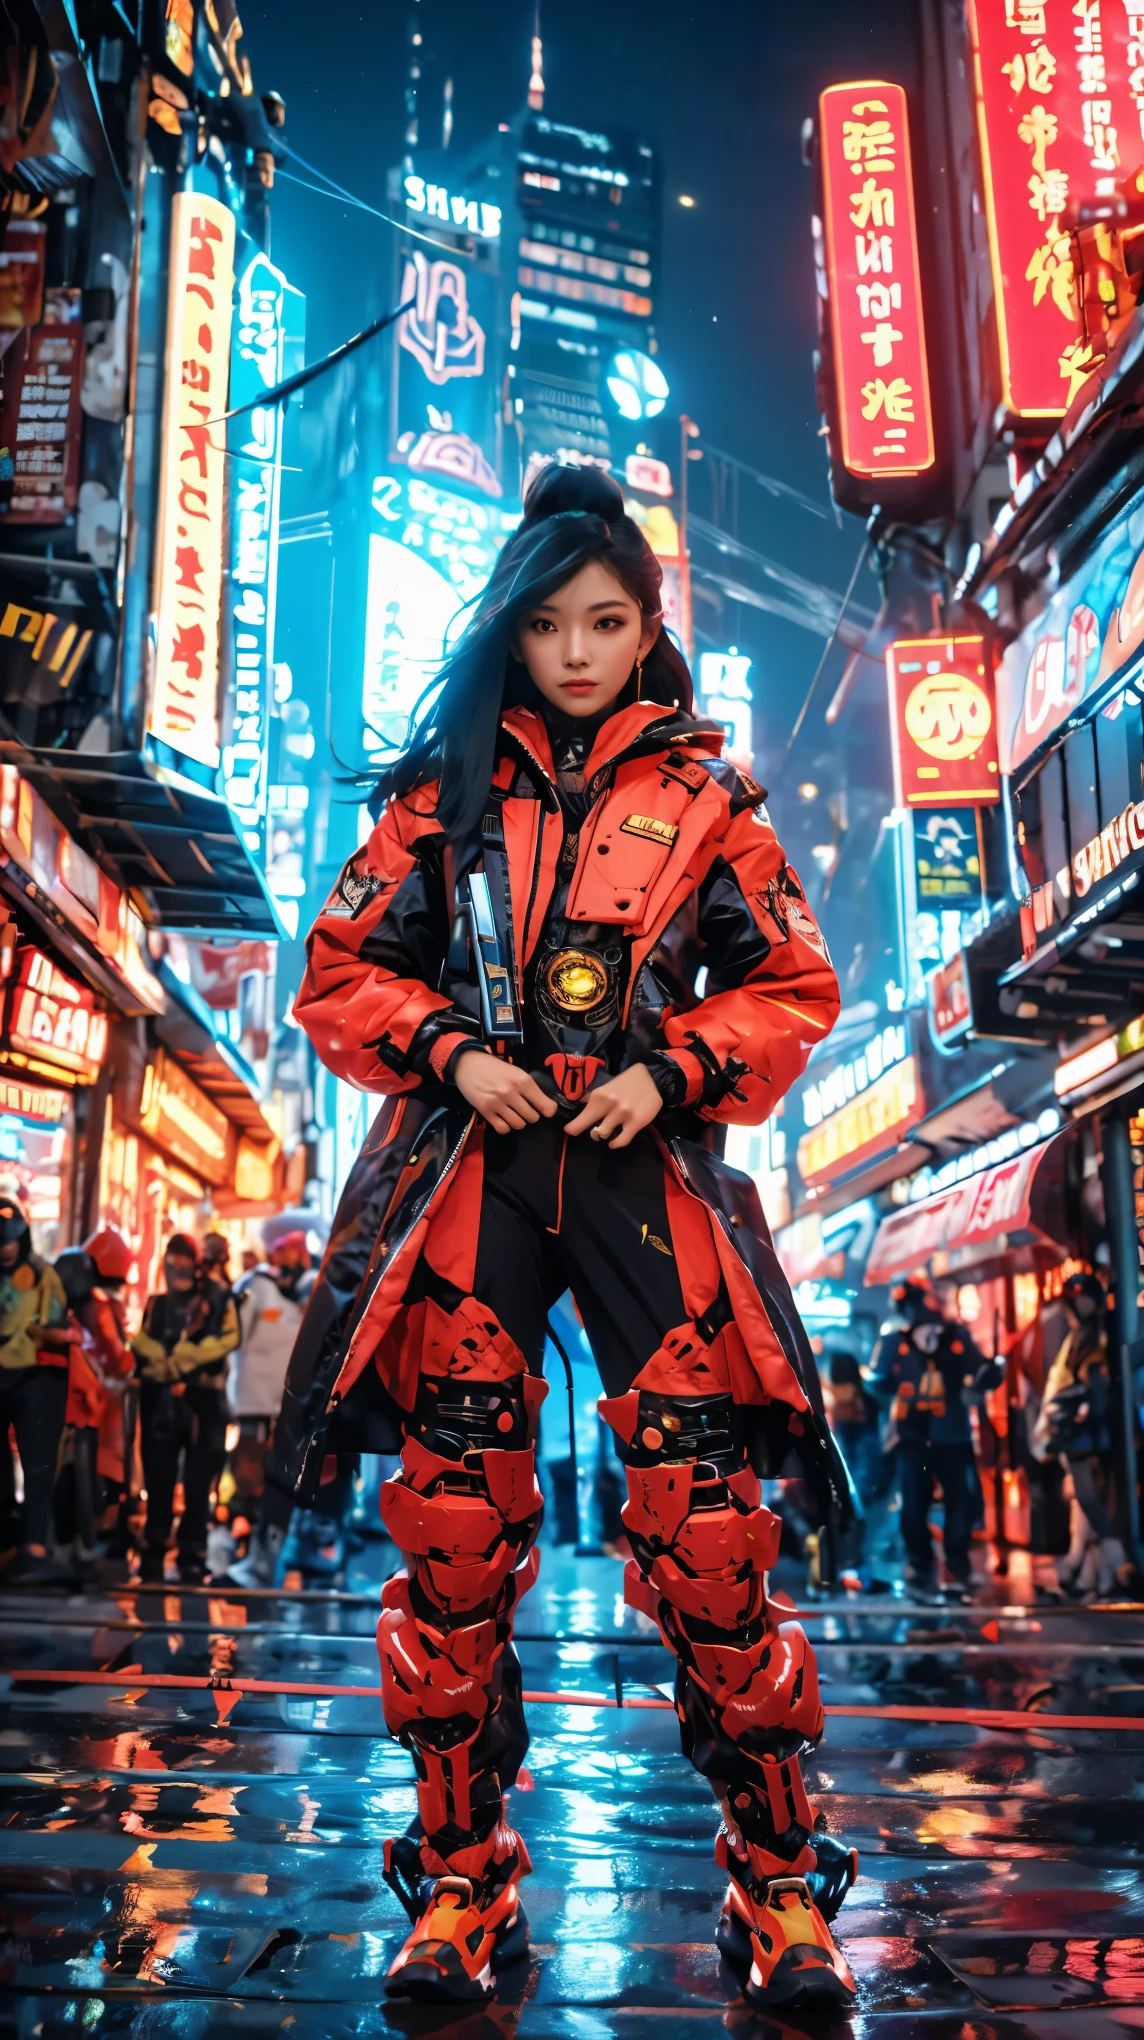 No centro pulsante da metrópole cyberpunk, Jacarta, uma mulher asiática surpreendentemente etérea com uma volumosa cascata de cabelo ébano chama a atenção no vibrante, multidão iluminada por neon. Vestido com um formidável, traje mecha vermelho-fogo, ela emana tenacidade e coragem. As superfícies polidas do traje refletem a paisagem urbana em tecnicolor, realçando as luzes e hologramas fascinantes que disparam pelo ar. Com ela ornamentada, lâmina cerimonial segura firmemente na mão, this captivating mystery embodies perseverance and optimism amidst Jacarta's riotous, Foi